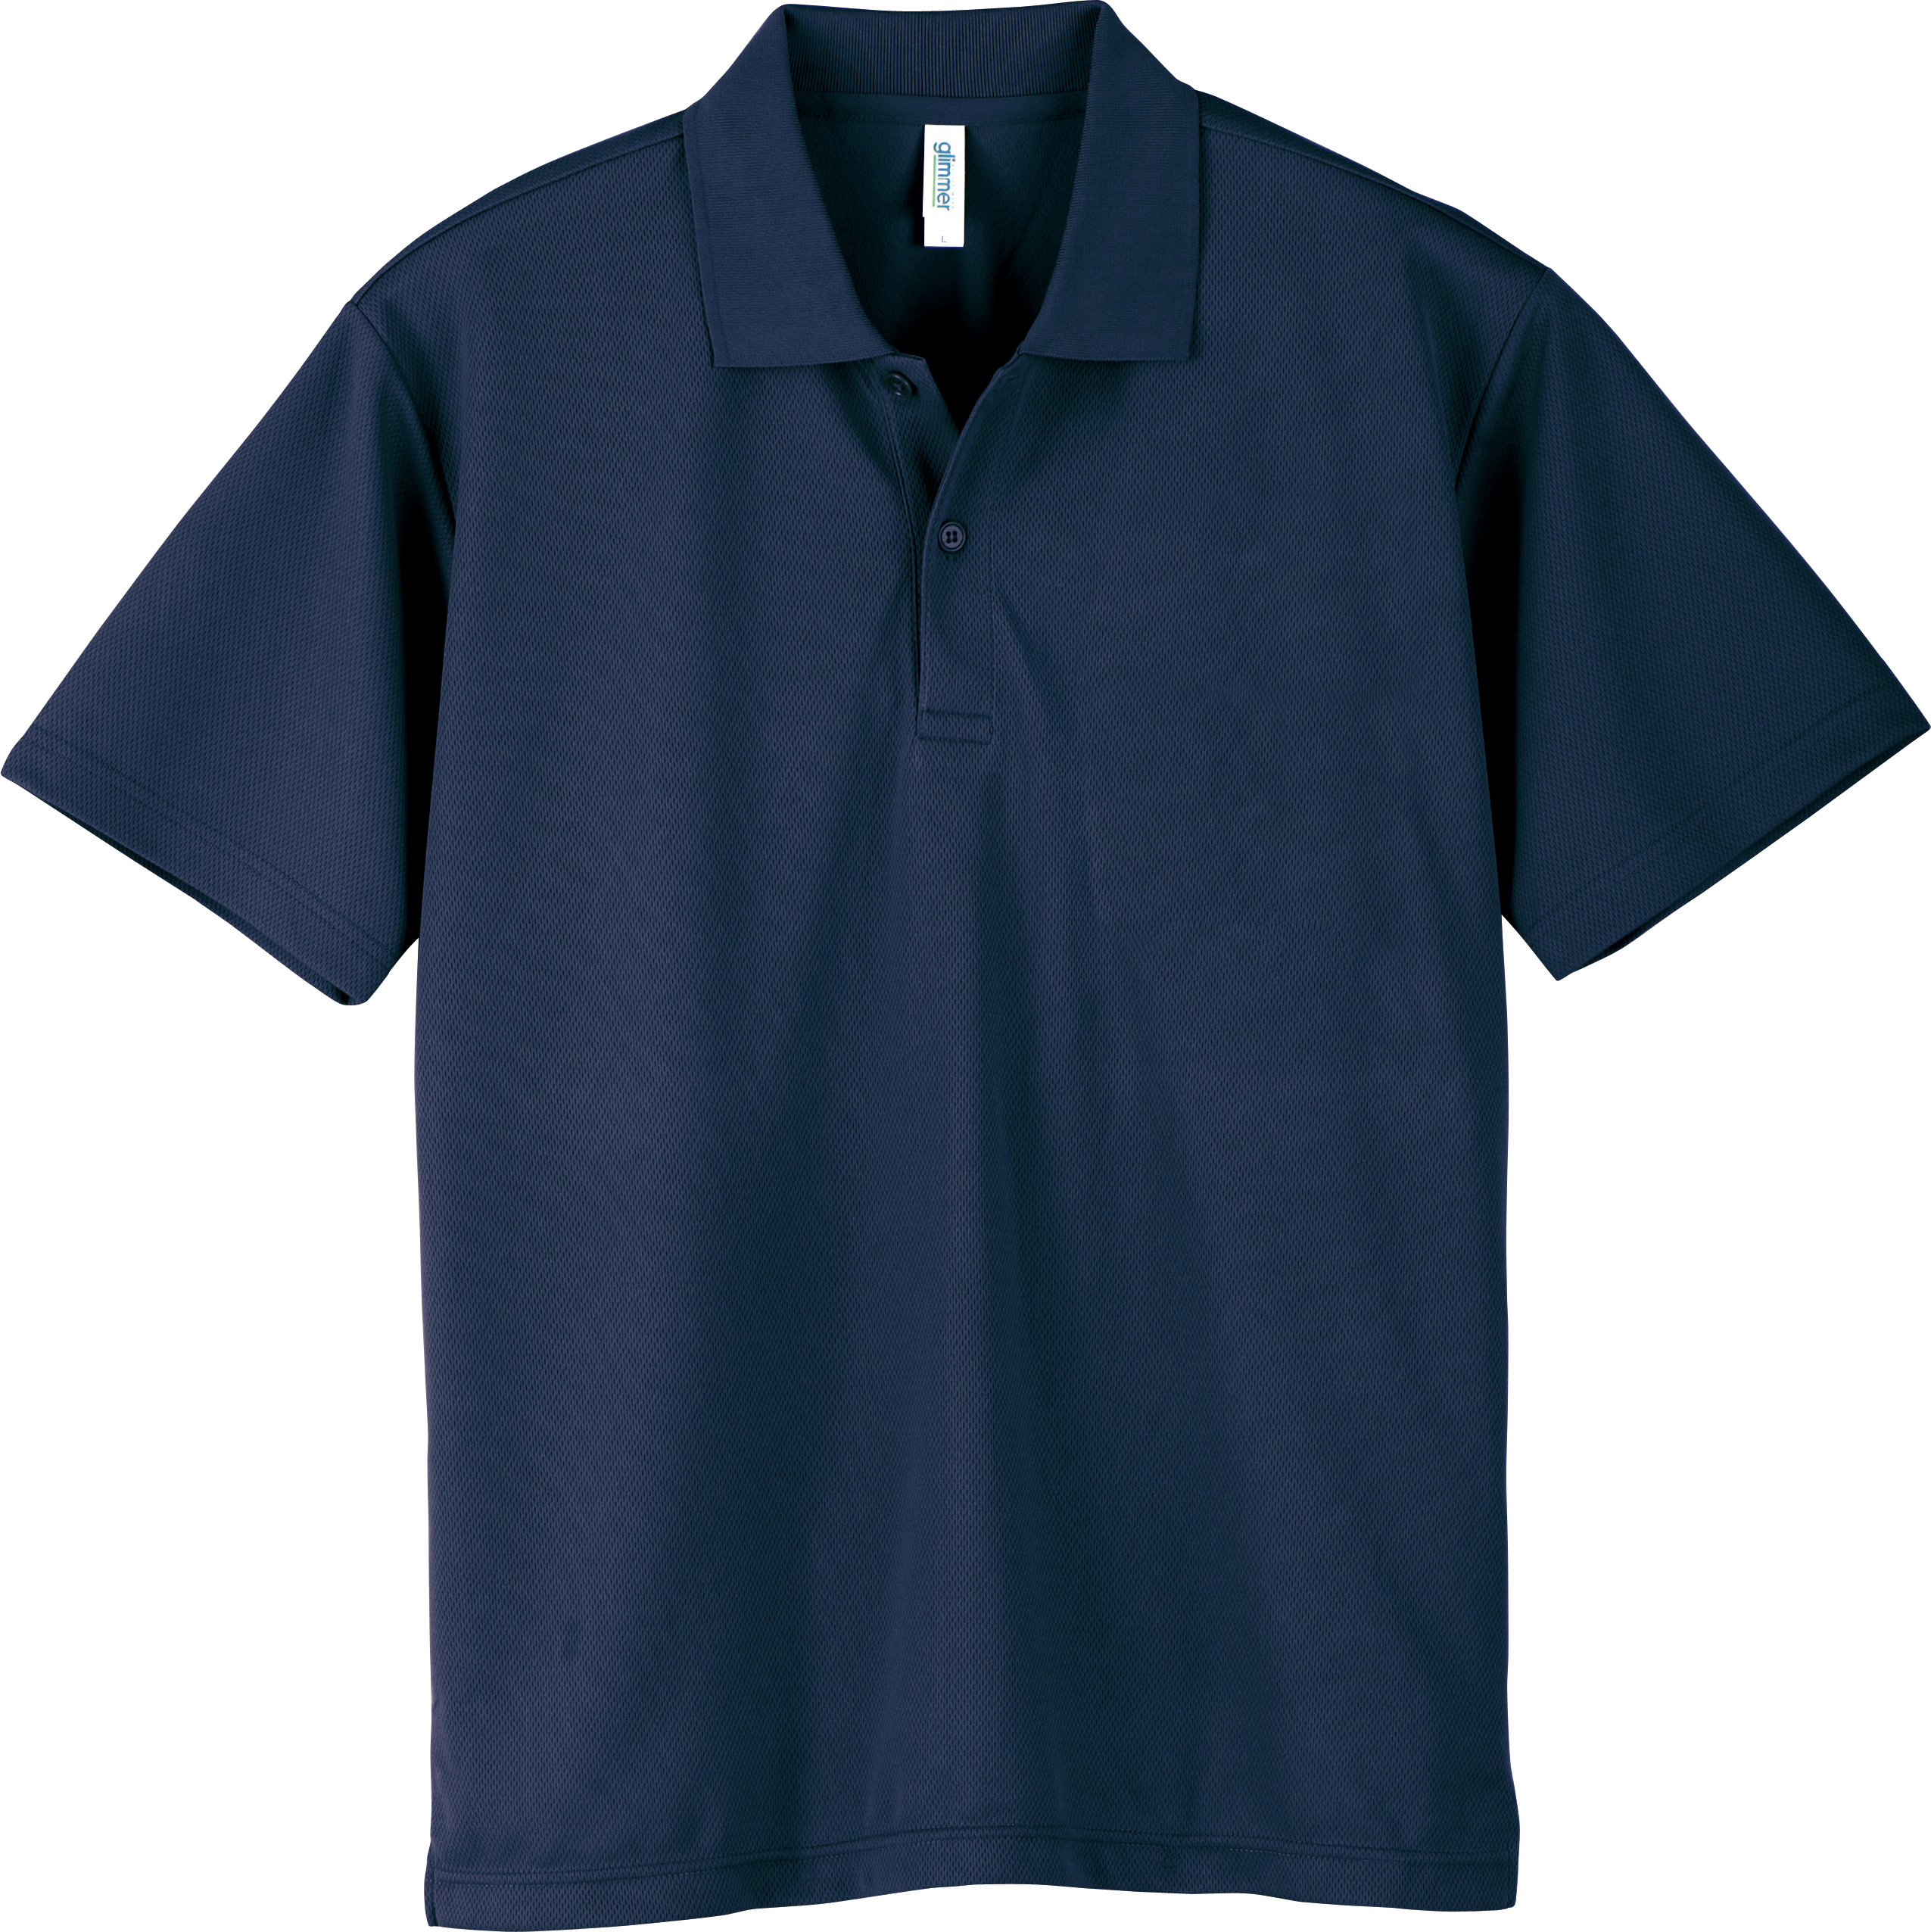 ポロシャツ 半袖 無地 シンプル オリジナルプリント 刺繍対応 4.4ozドライポロシャツ カラー2...